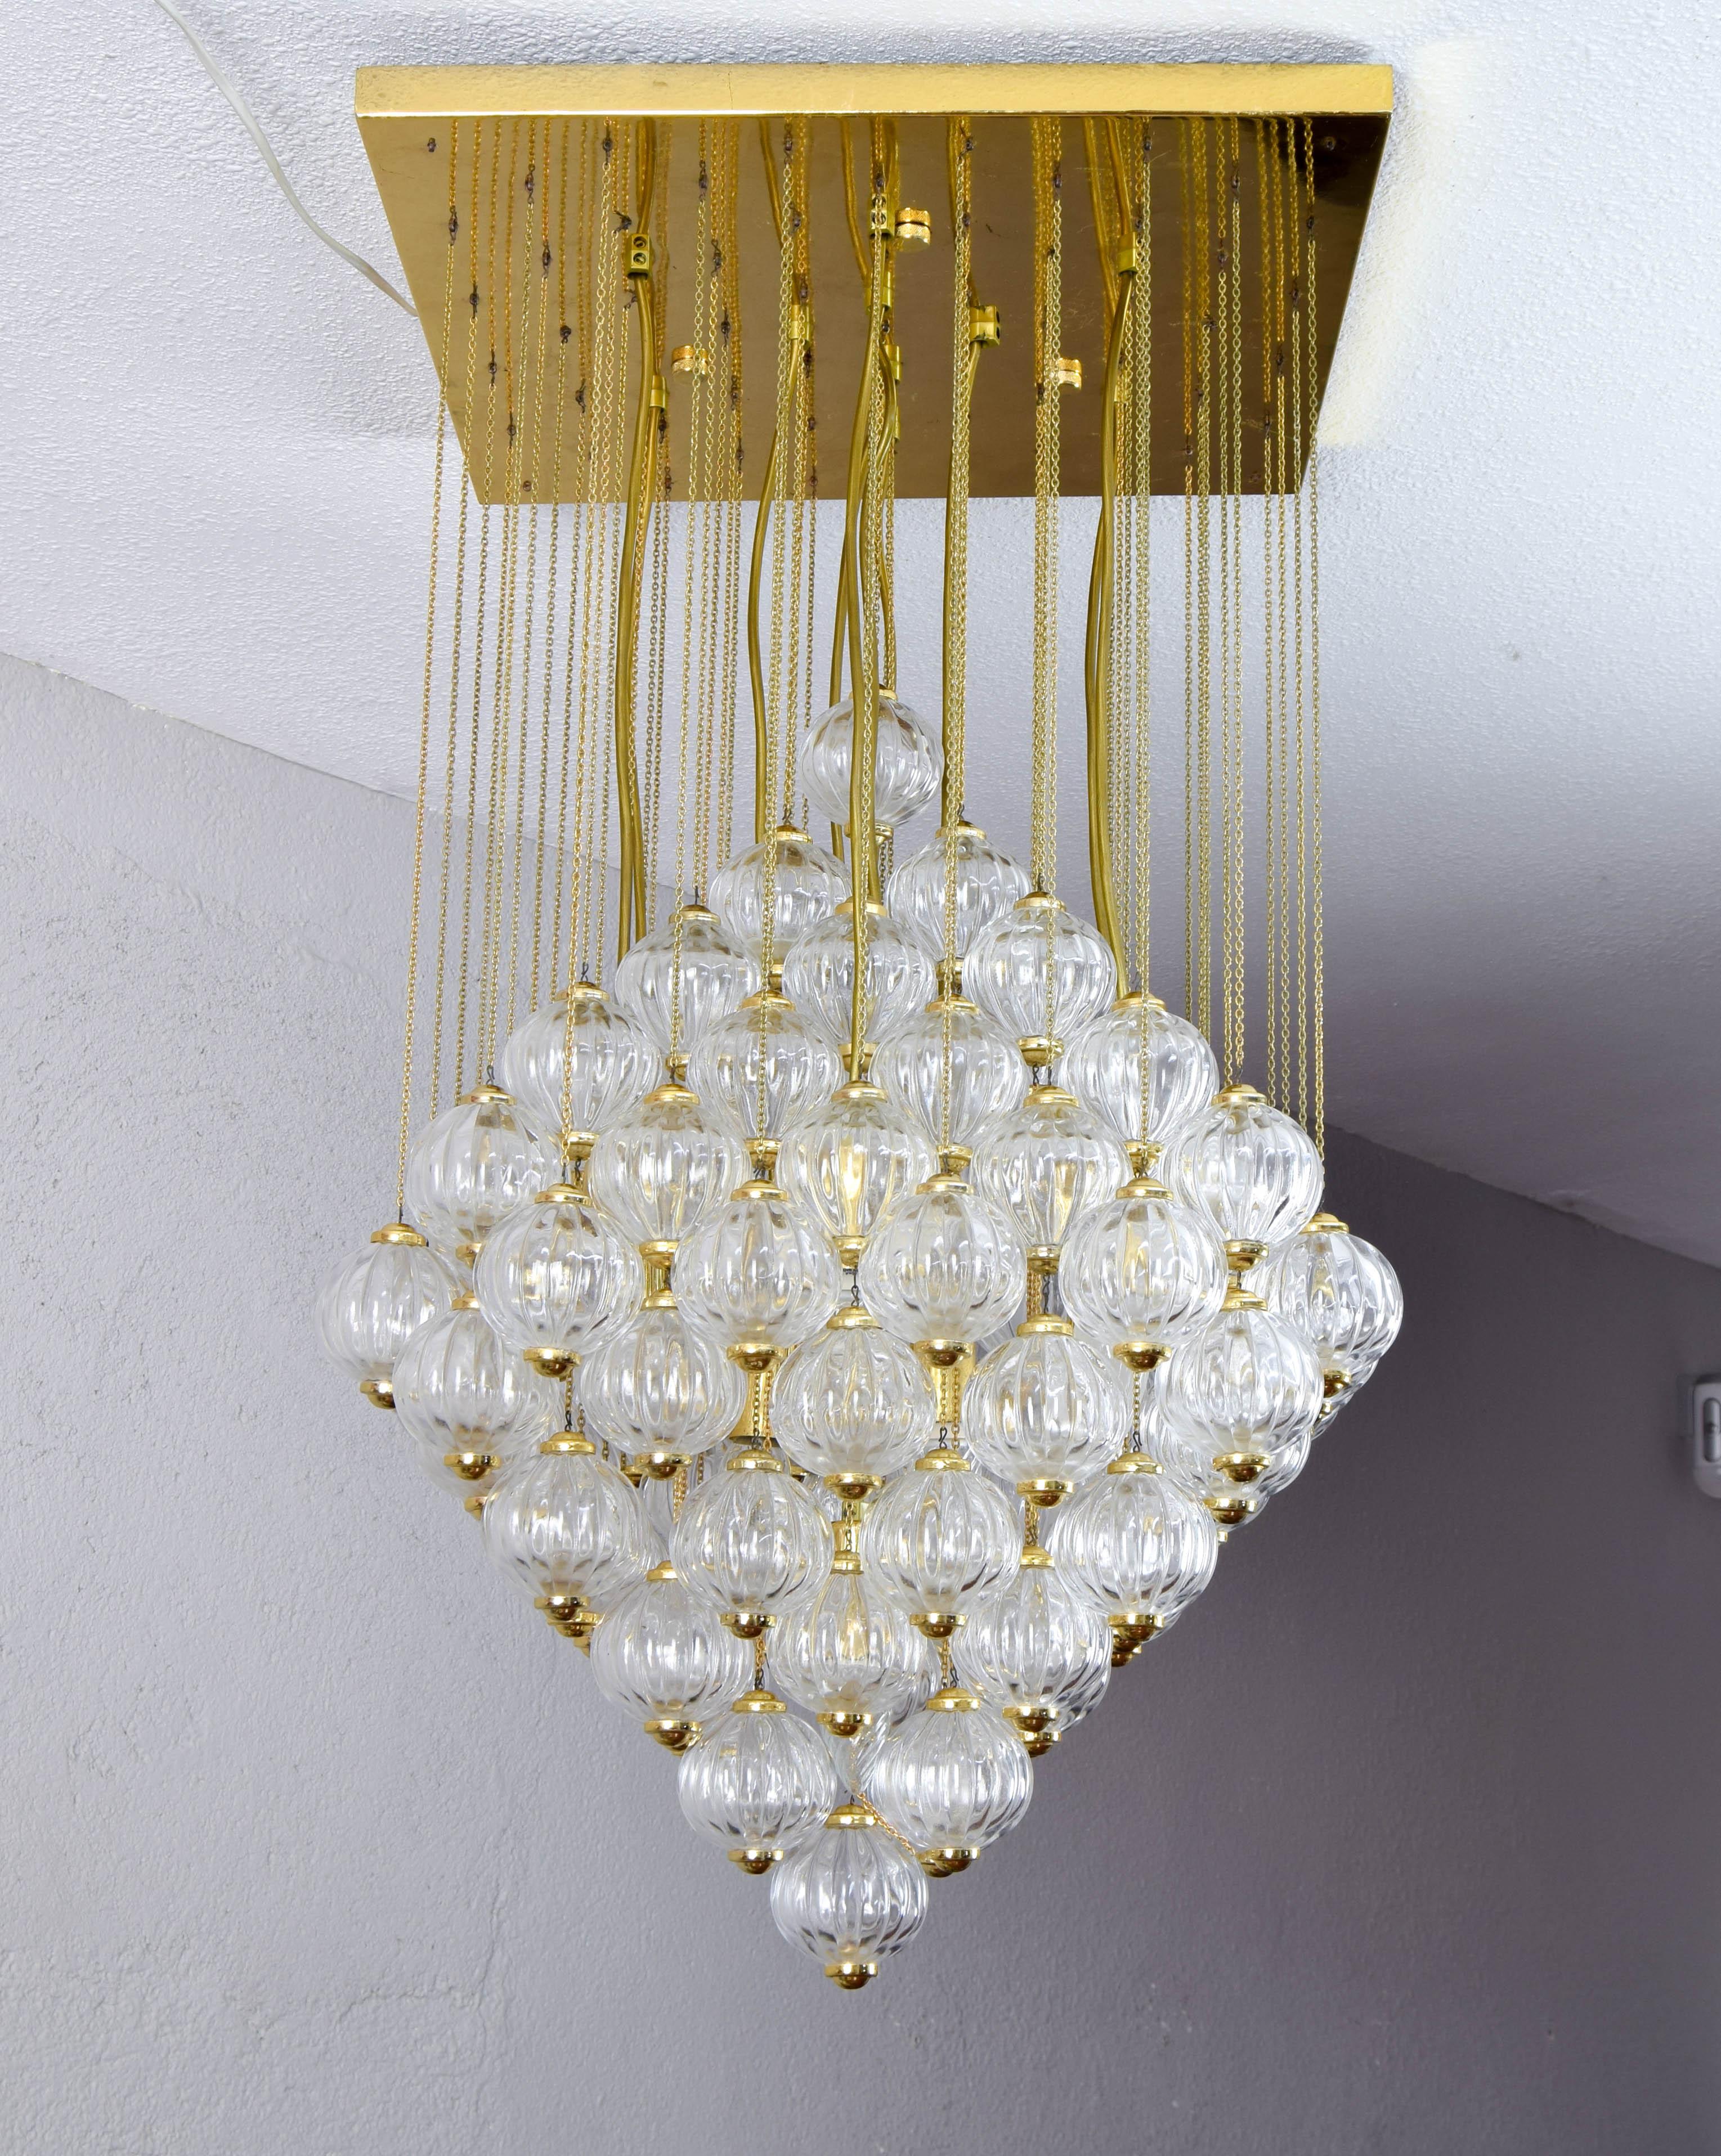 Luxueux et spectaculaire lustre en laiton et bulles de Murano soufflées à la main, conçu et produit par Paolo Venini en 1960 en Italie.
D'un design exquis, il s'agit d'une multitude de boules en verre de Murano sculptées de 7 centimètres de